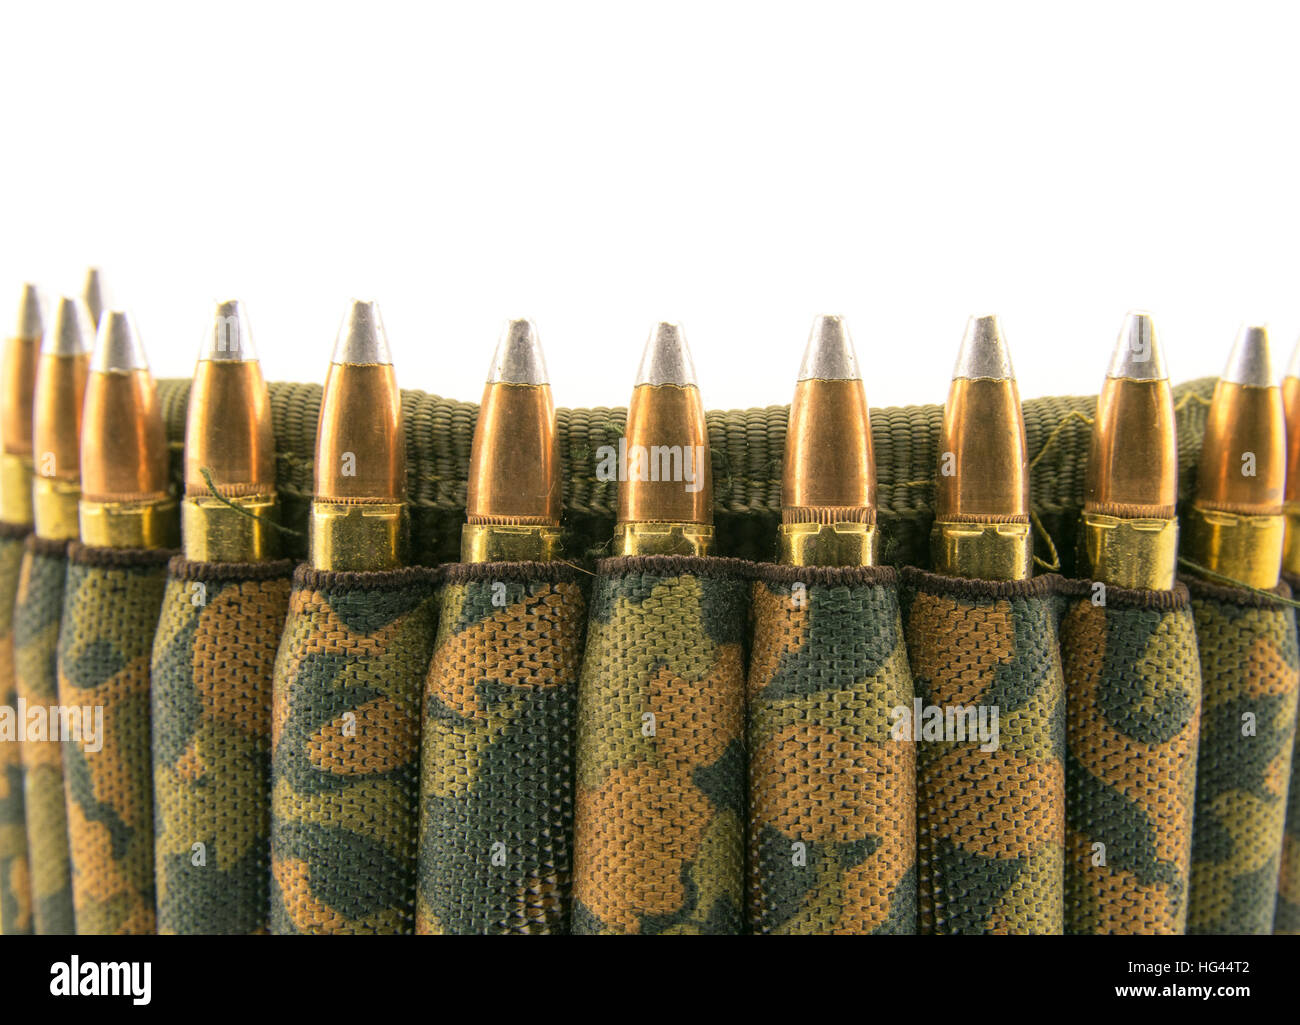 Camouflage ammunition belt for rifle on white background. Stock Photo